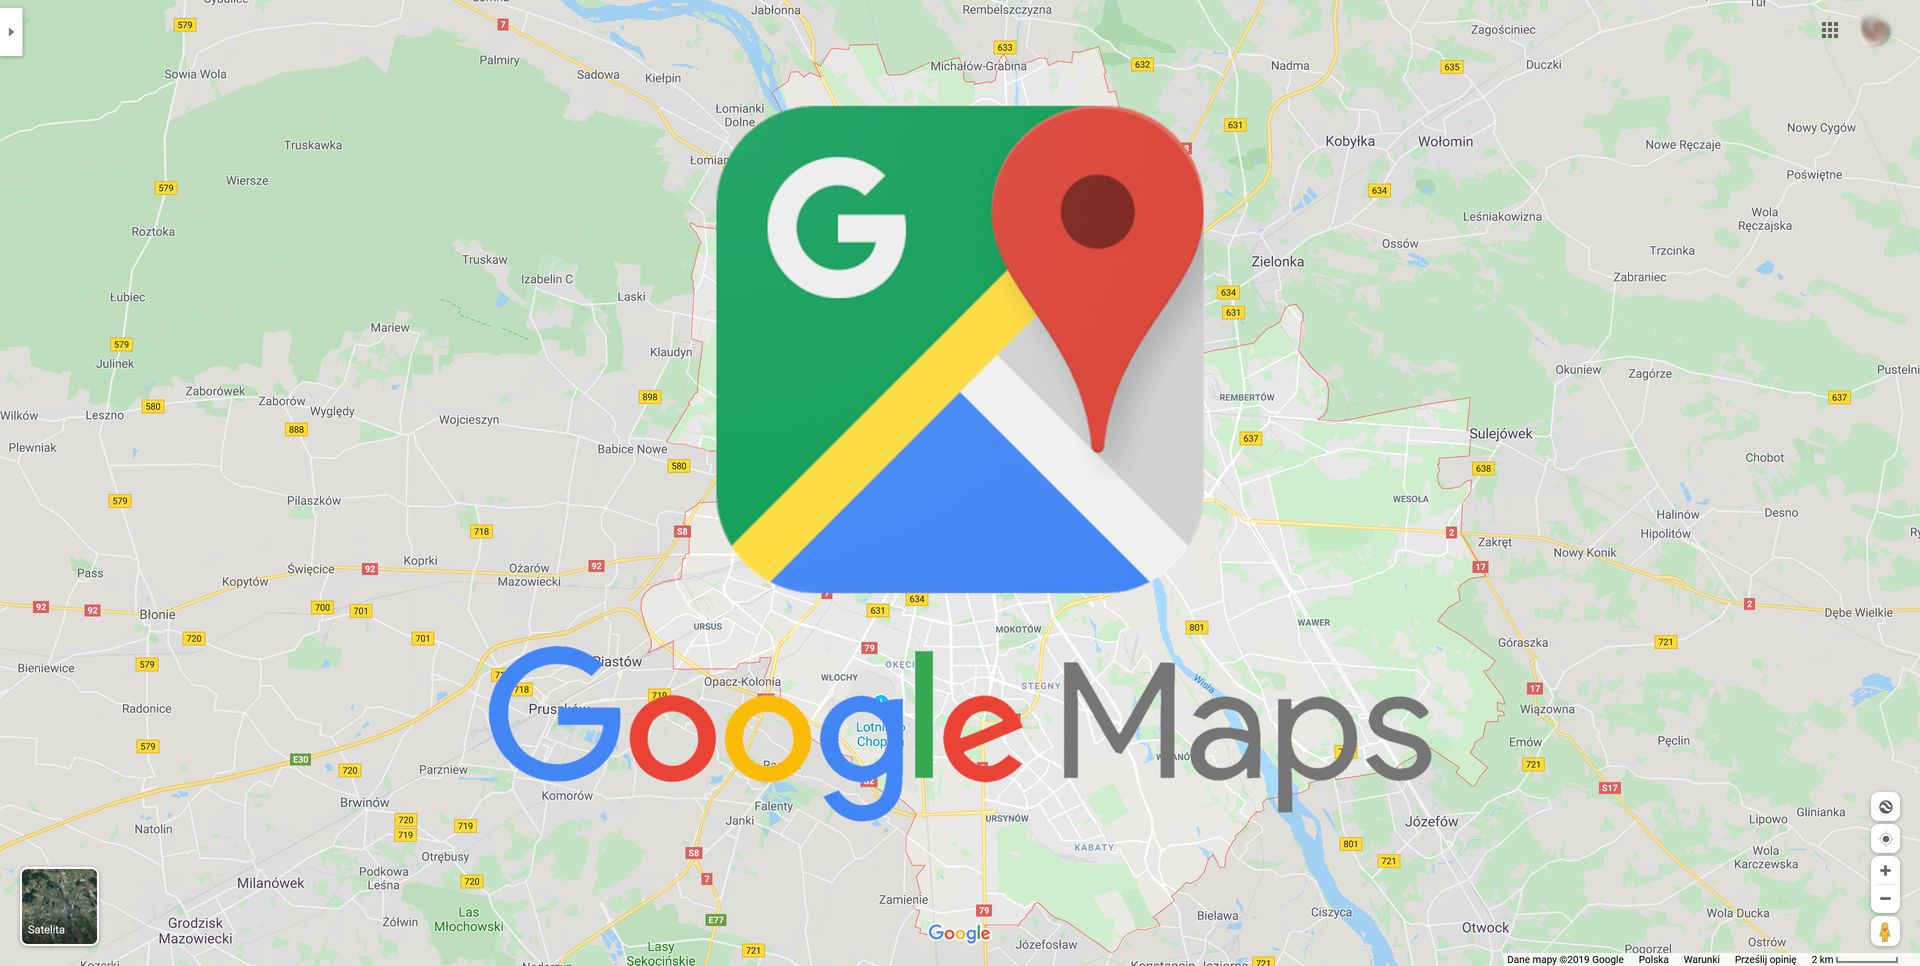  Mapy Google Oferuj Wiele Funkcji O Kt rych Mogli cie Nie Wiedzie 